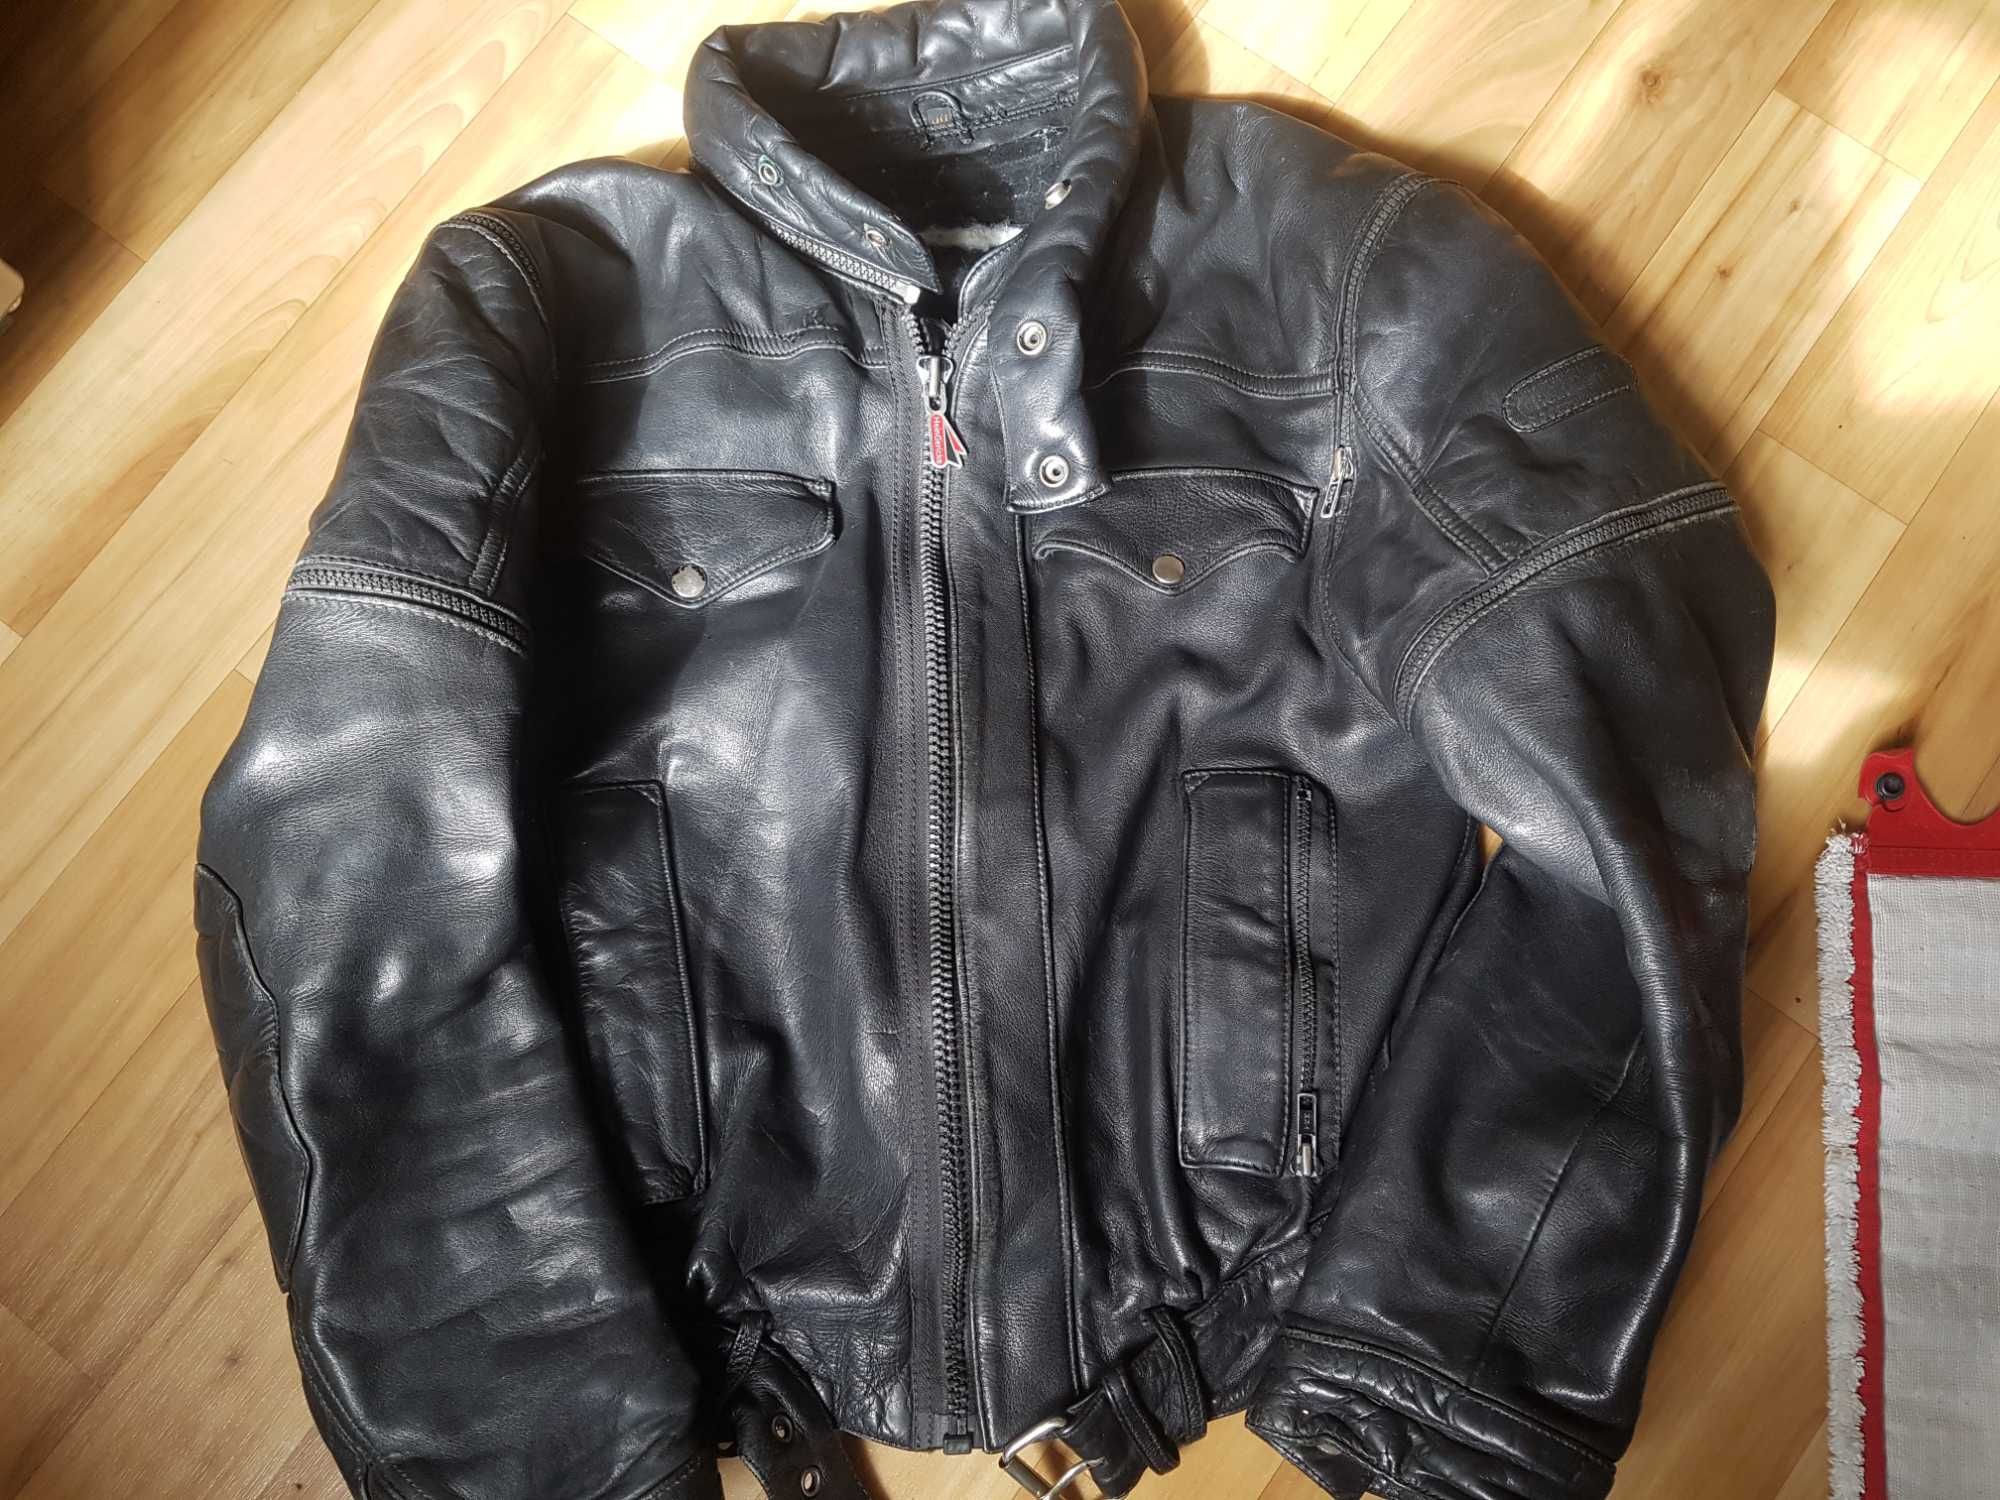 Продам мото куртку Hein Gericke розмір M 100% оригинал кожна. Dainese